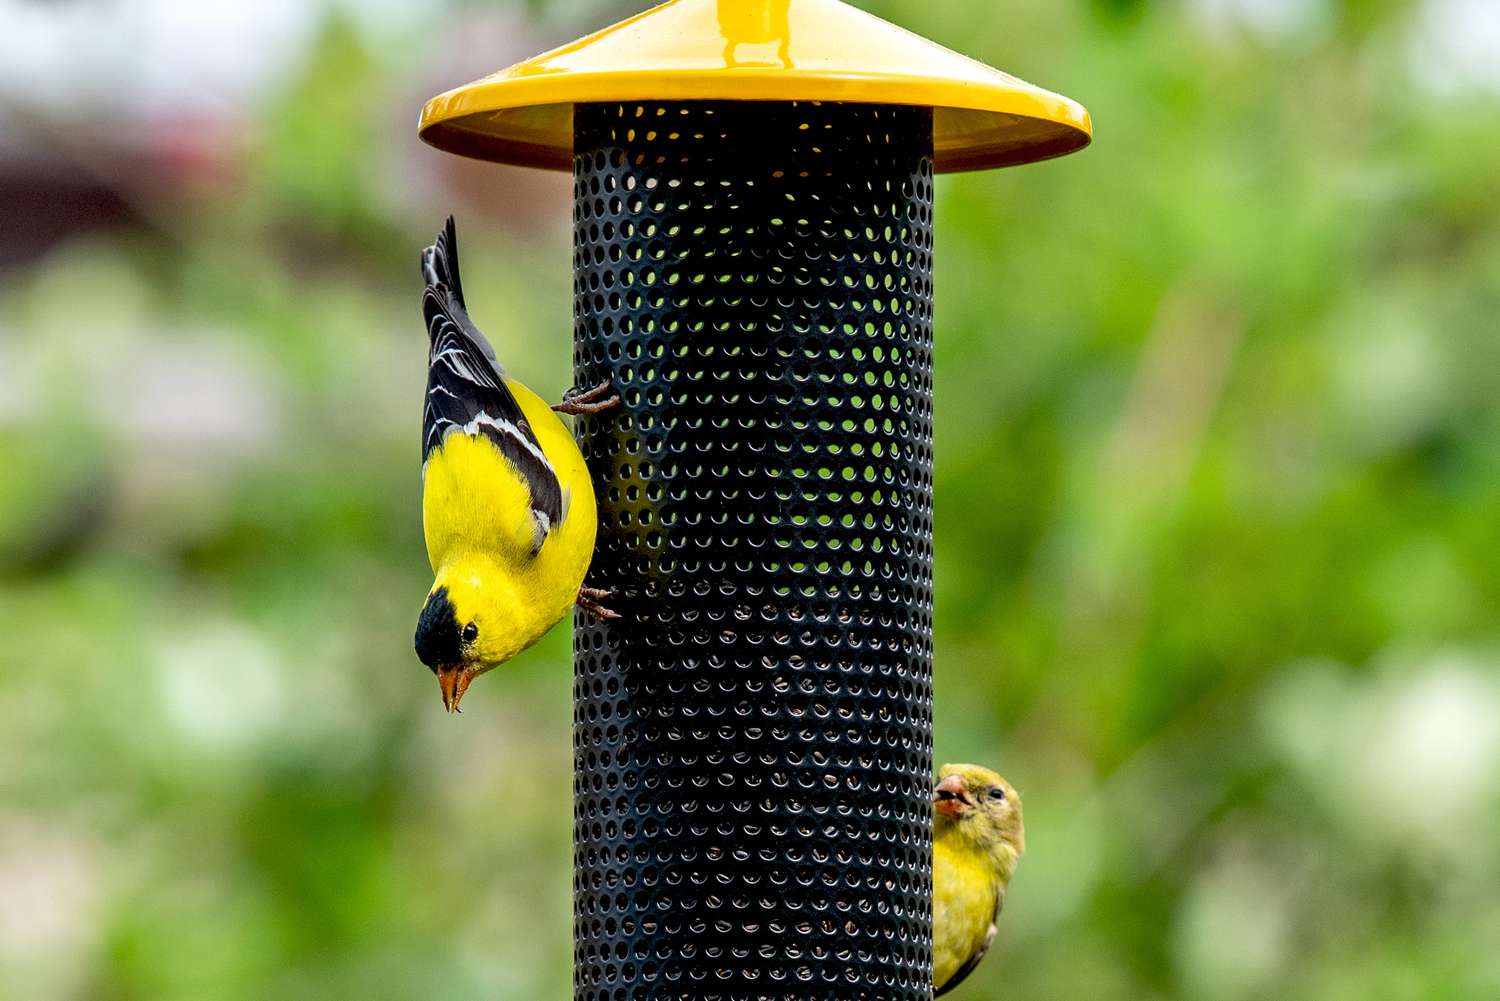 Stieglitze am schwarz-gelben Vogelfutterhaus fressen Nyjersamen in Großaufnahme